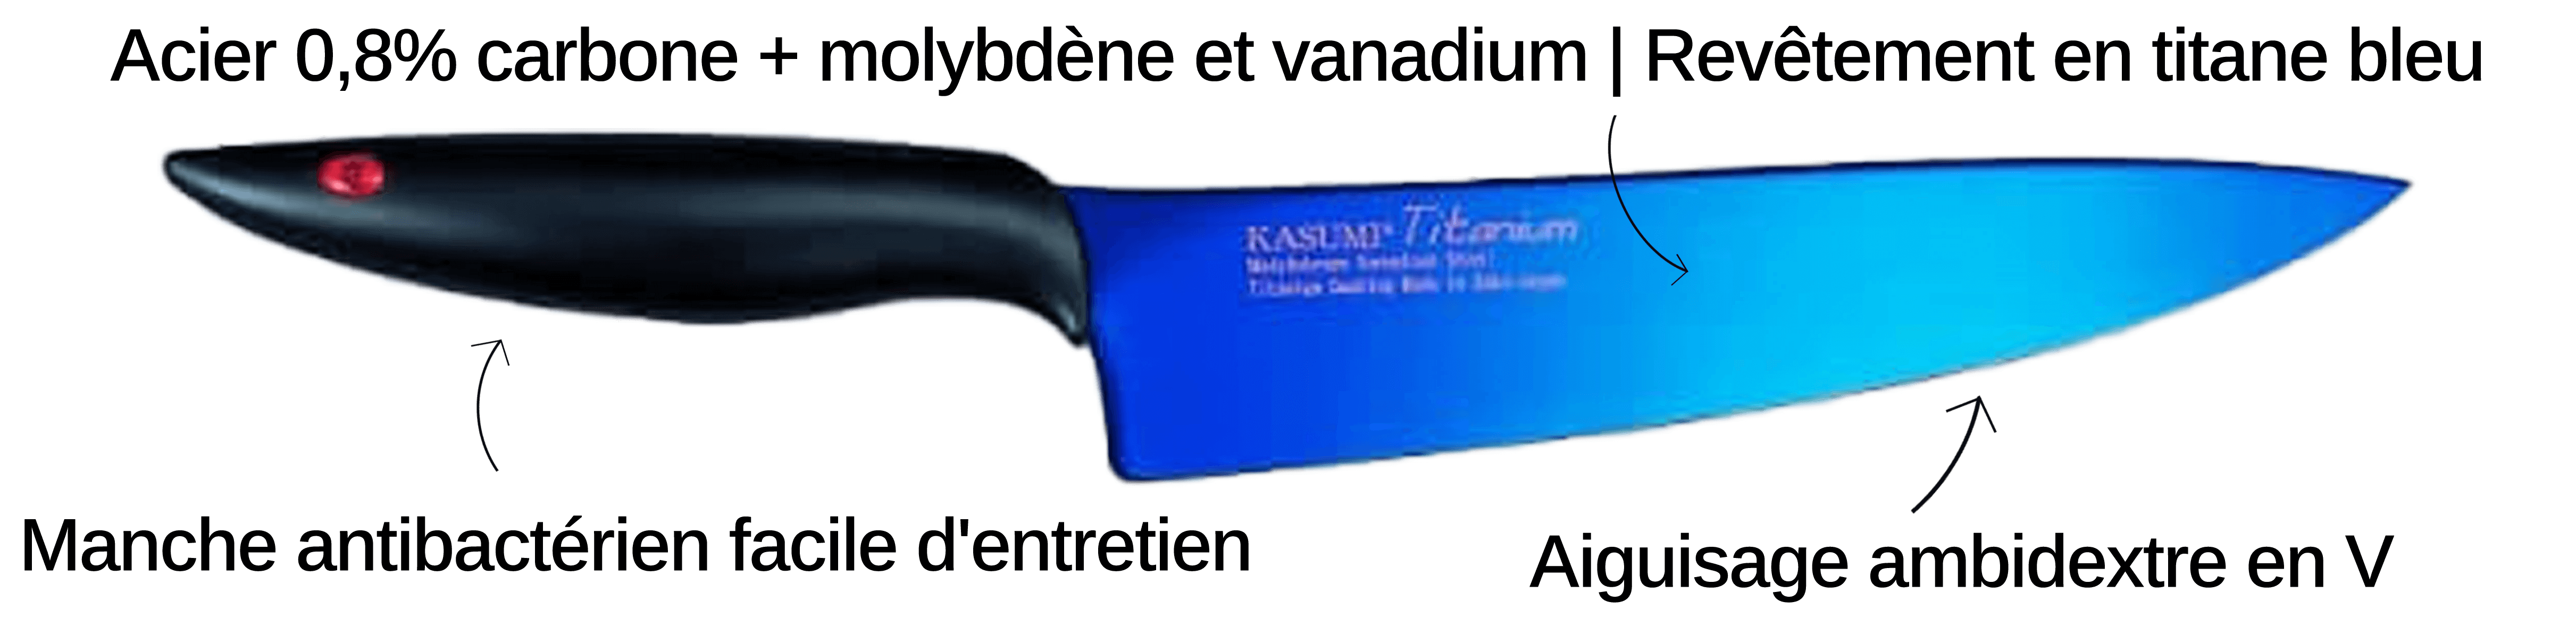 Découvrez le couteau Kasumi ici